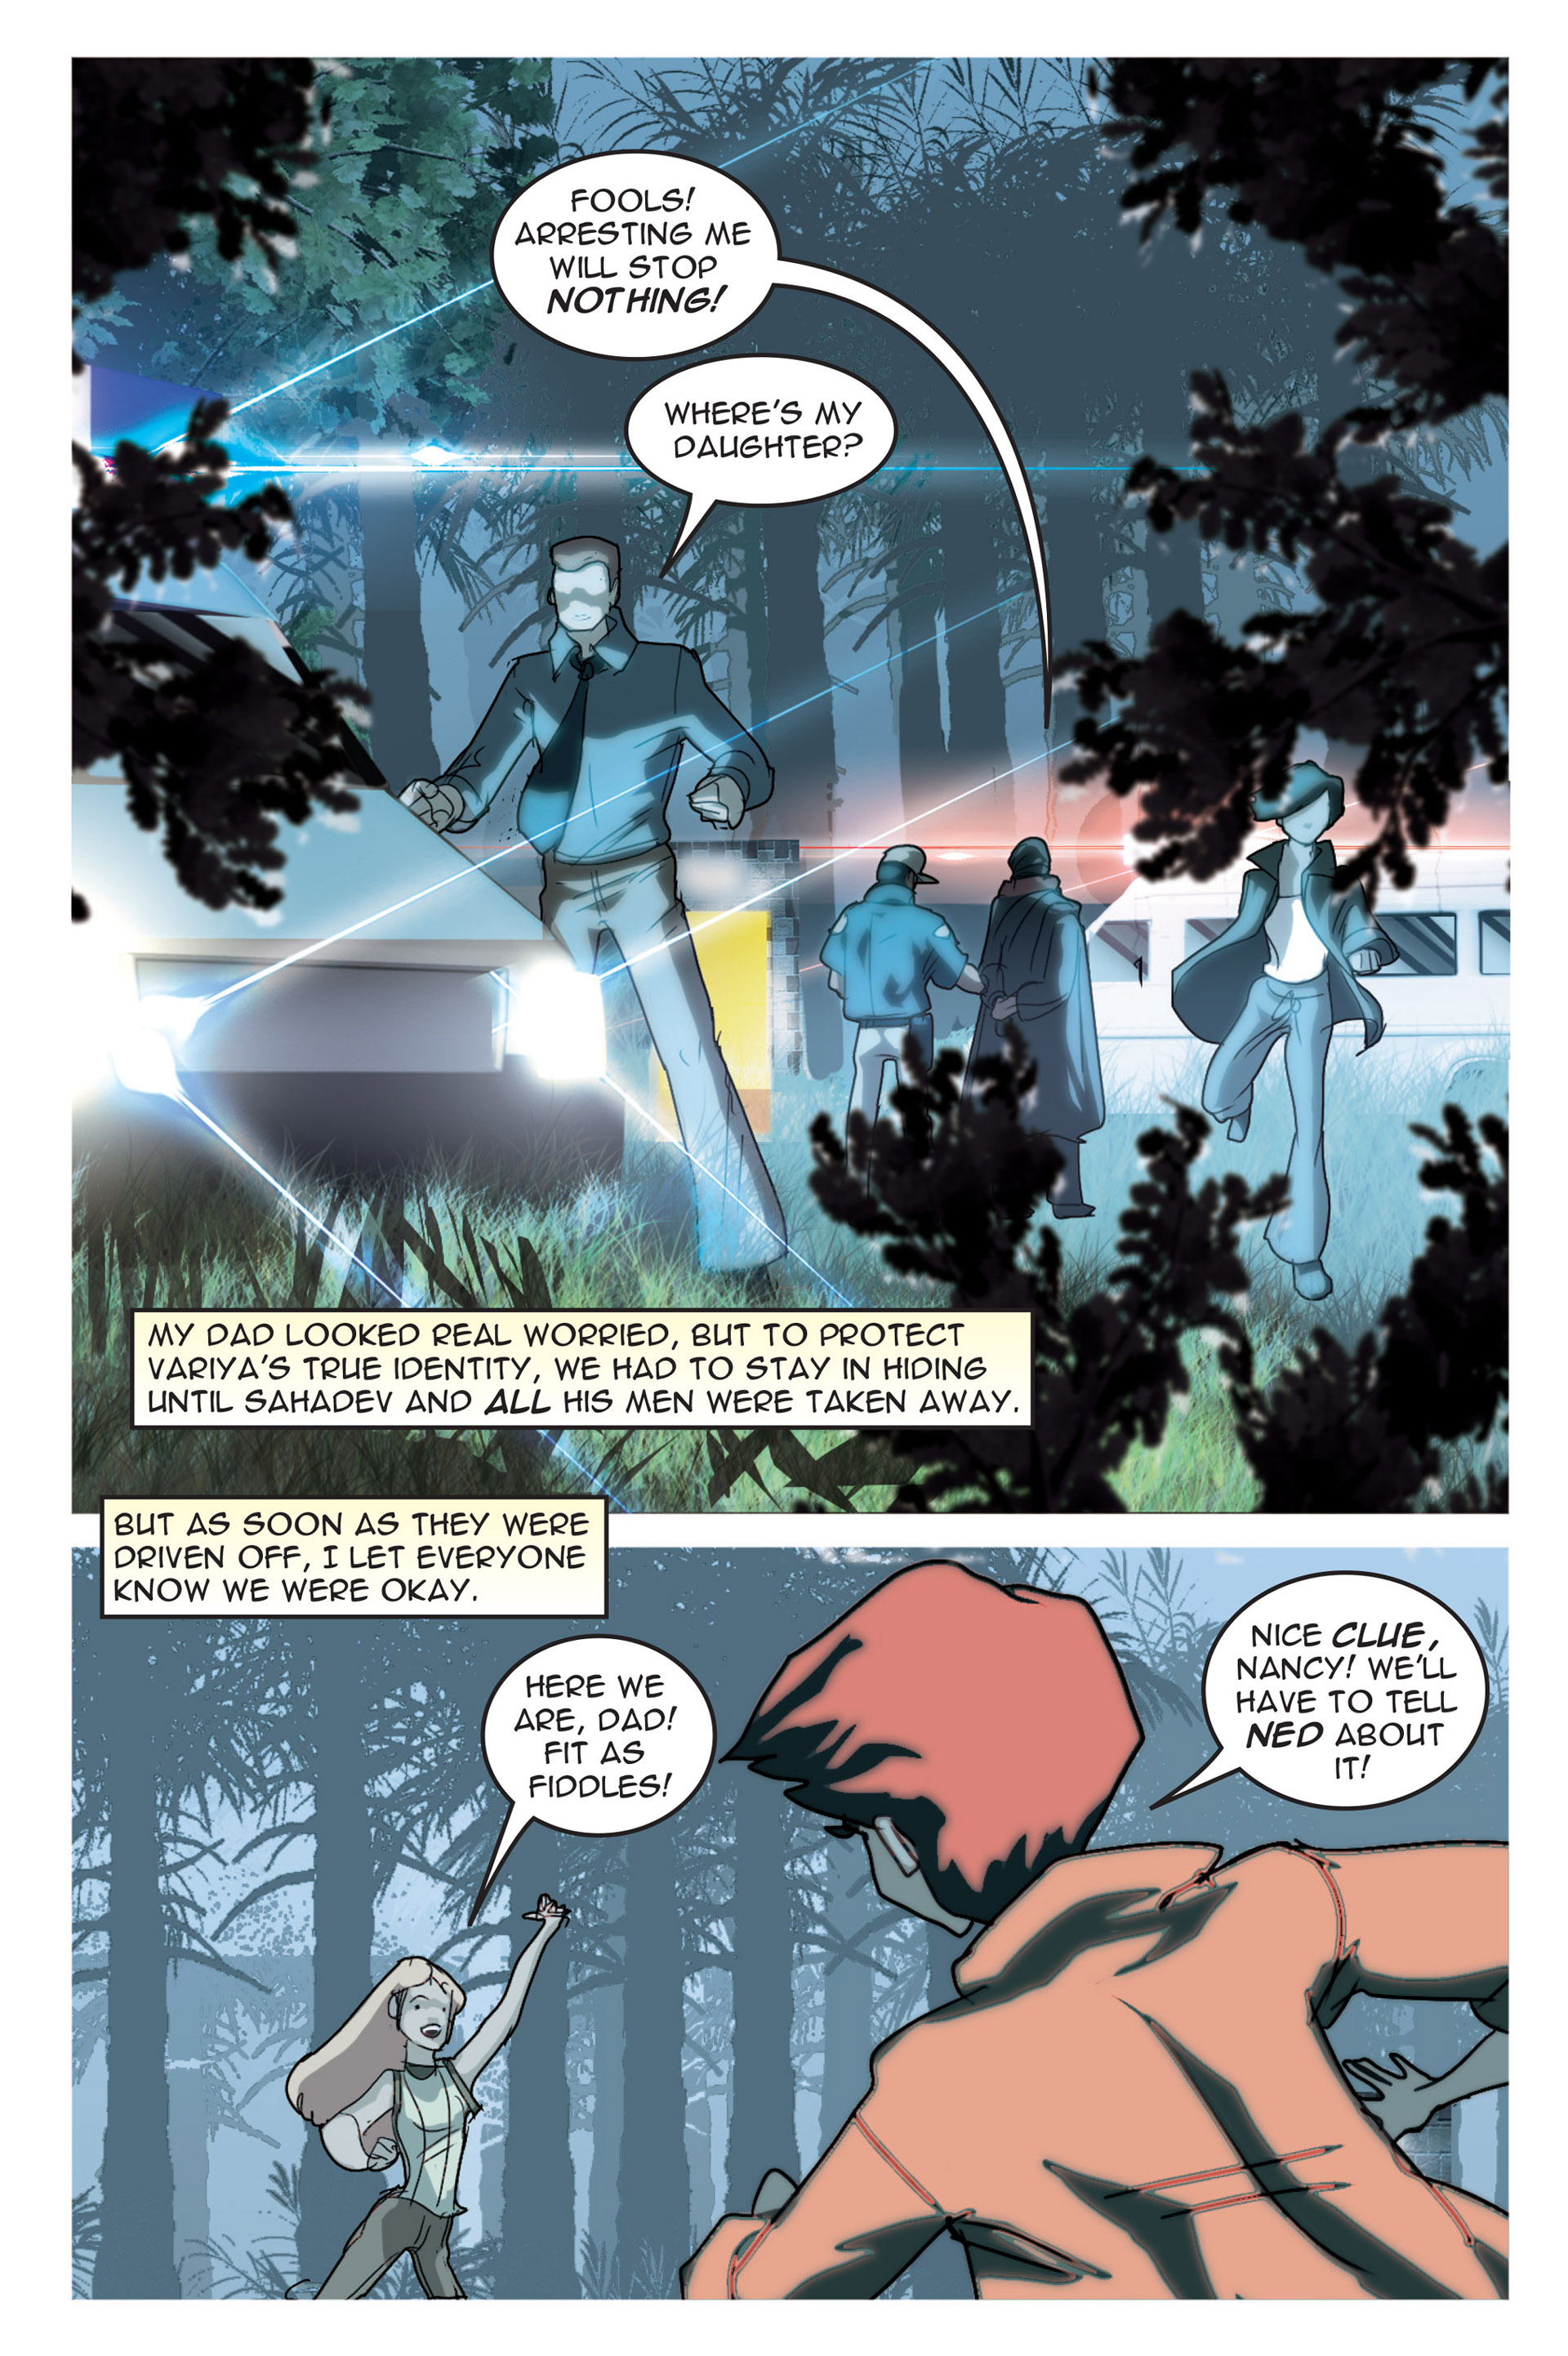 Read online Nancy Drew comic -  Issue #4 - 84